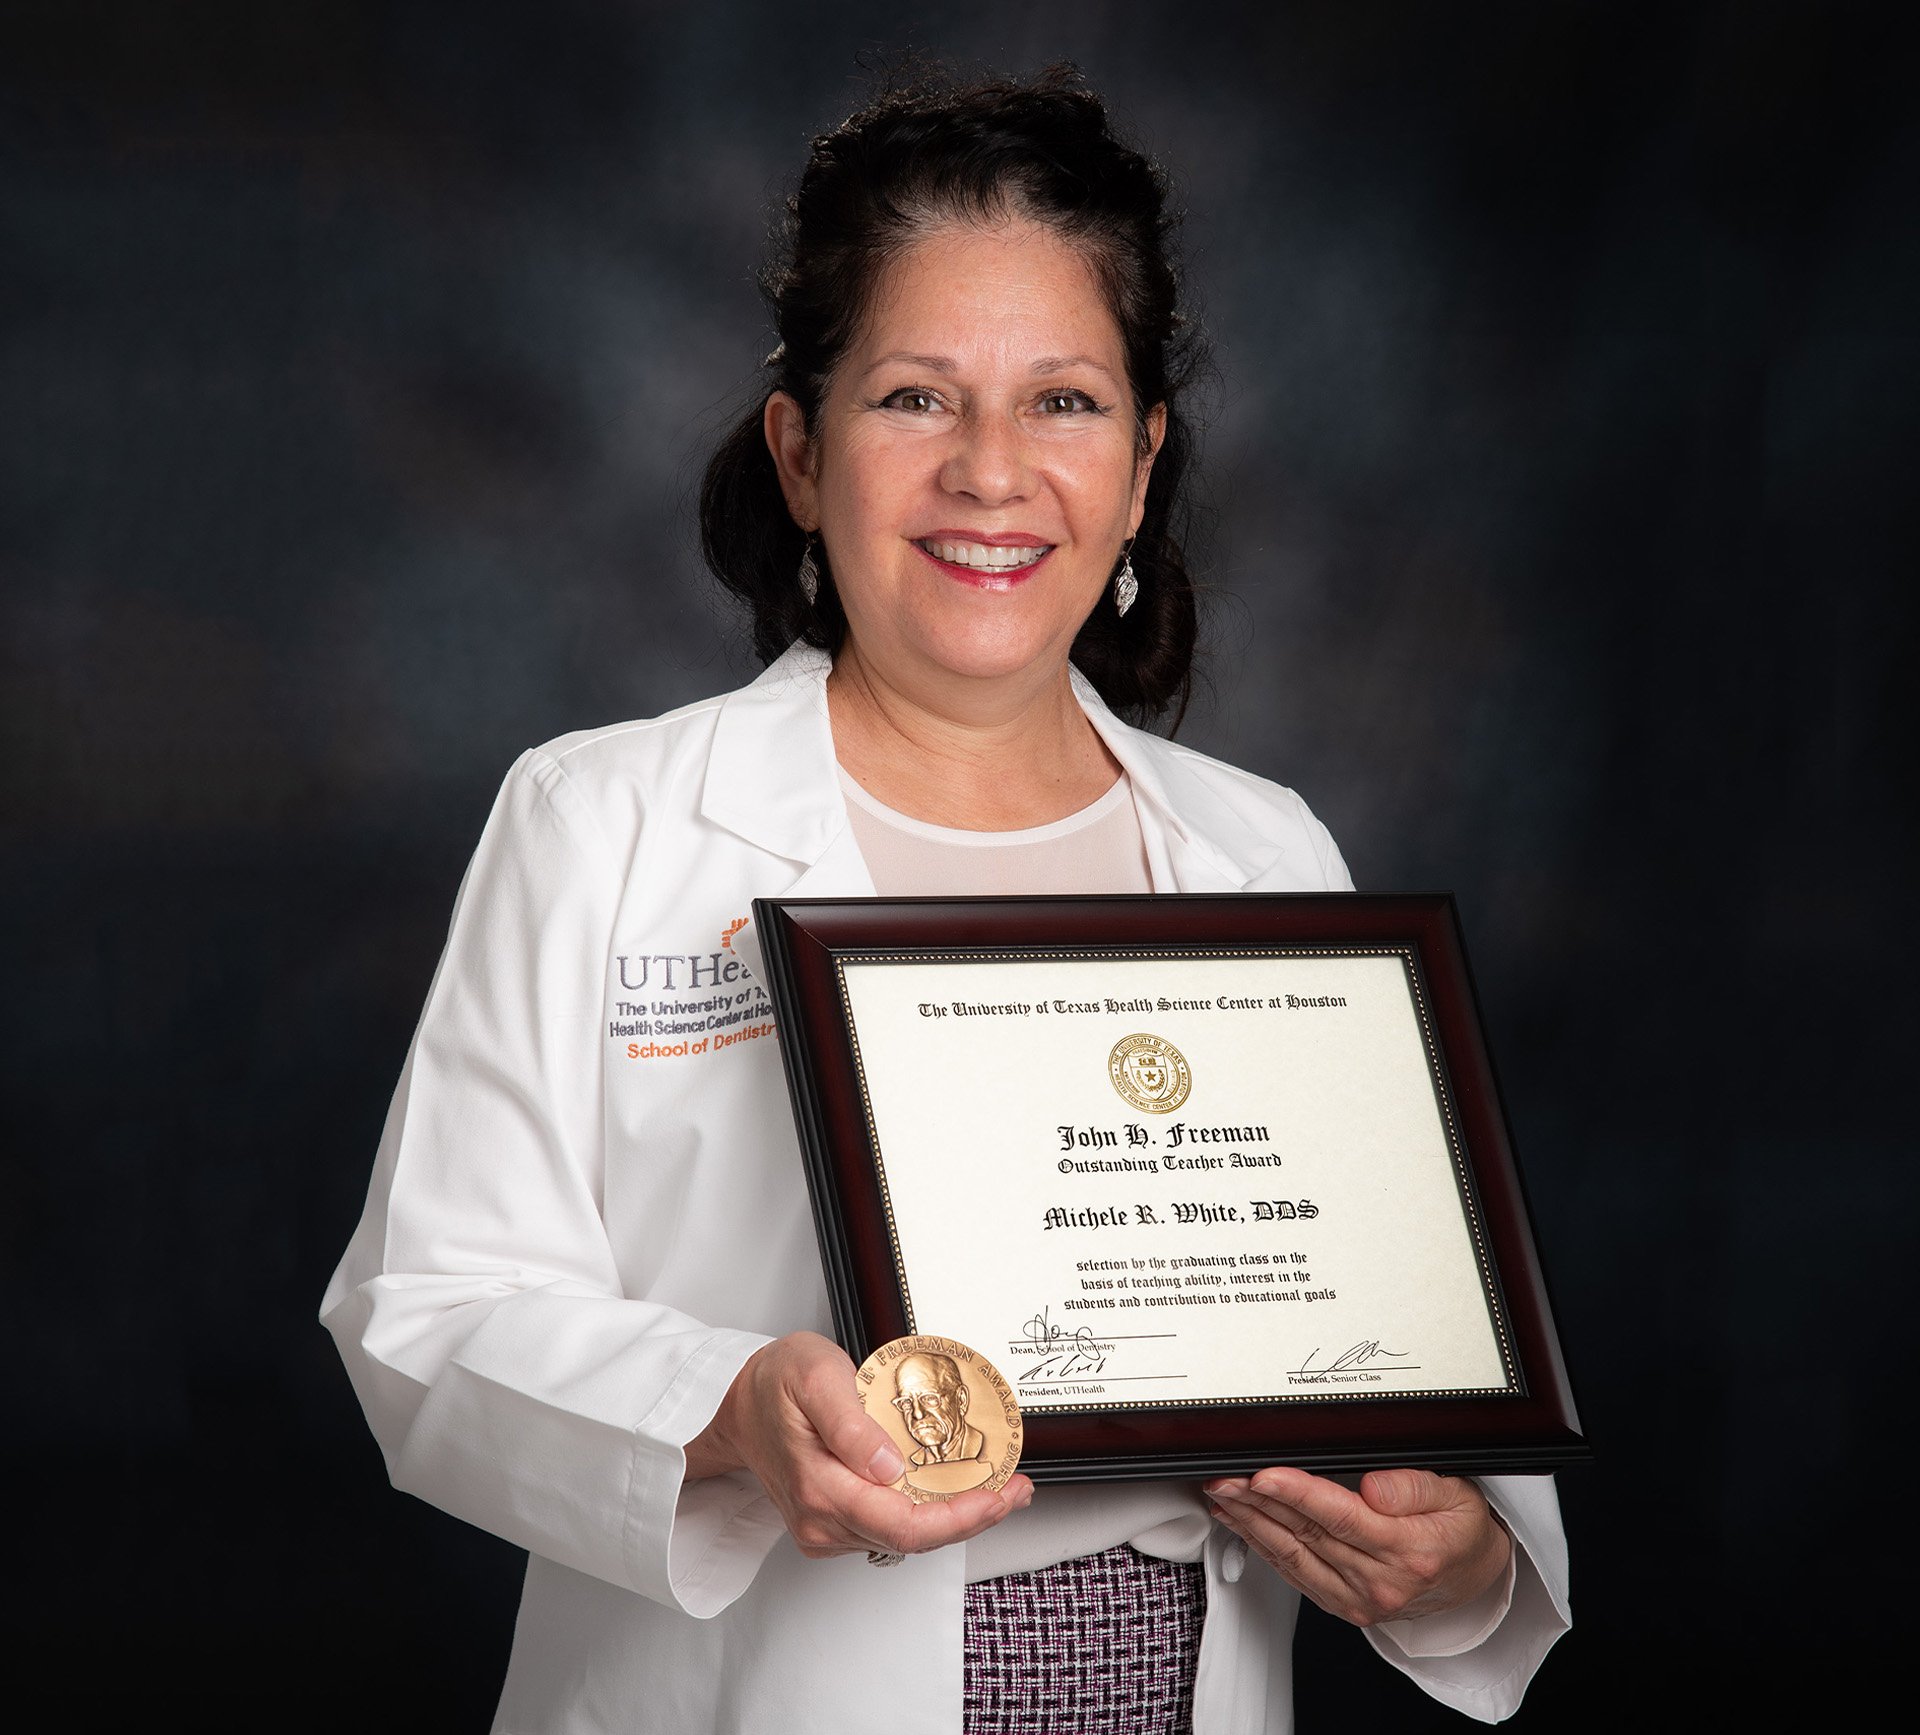 Dr. Michele White holds her framed certificate and medallion for the John H. Freeman Award.